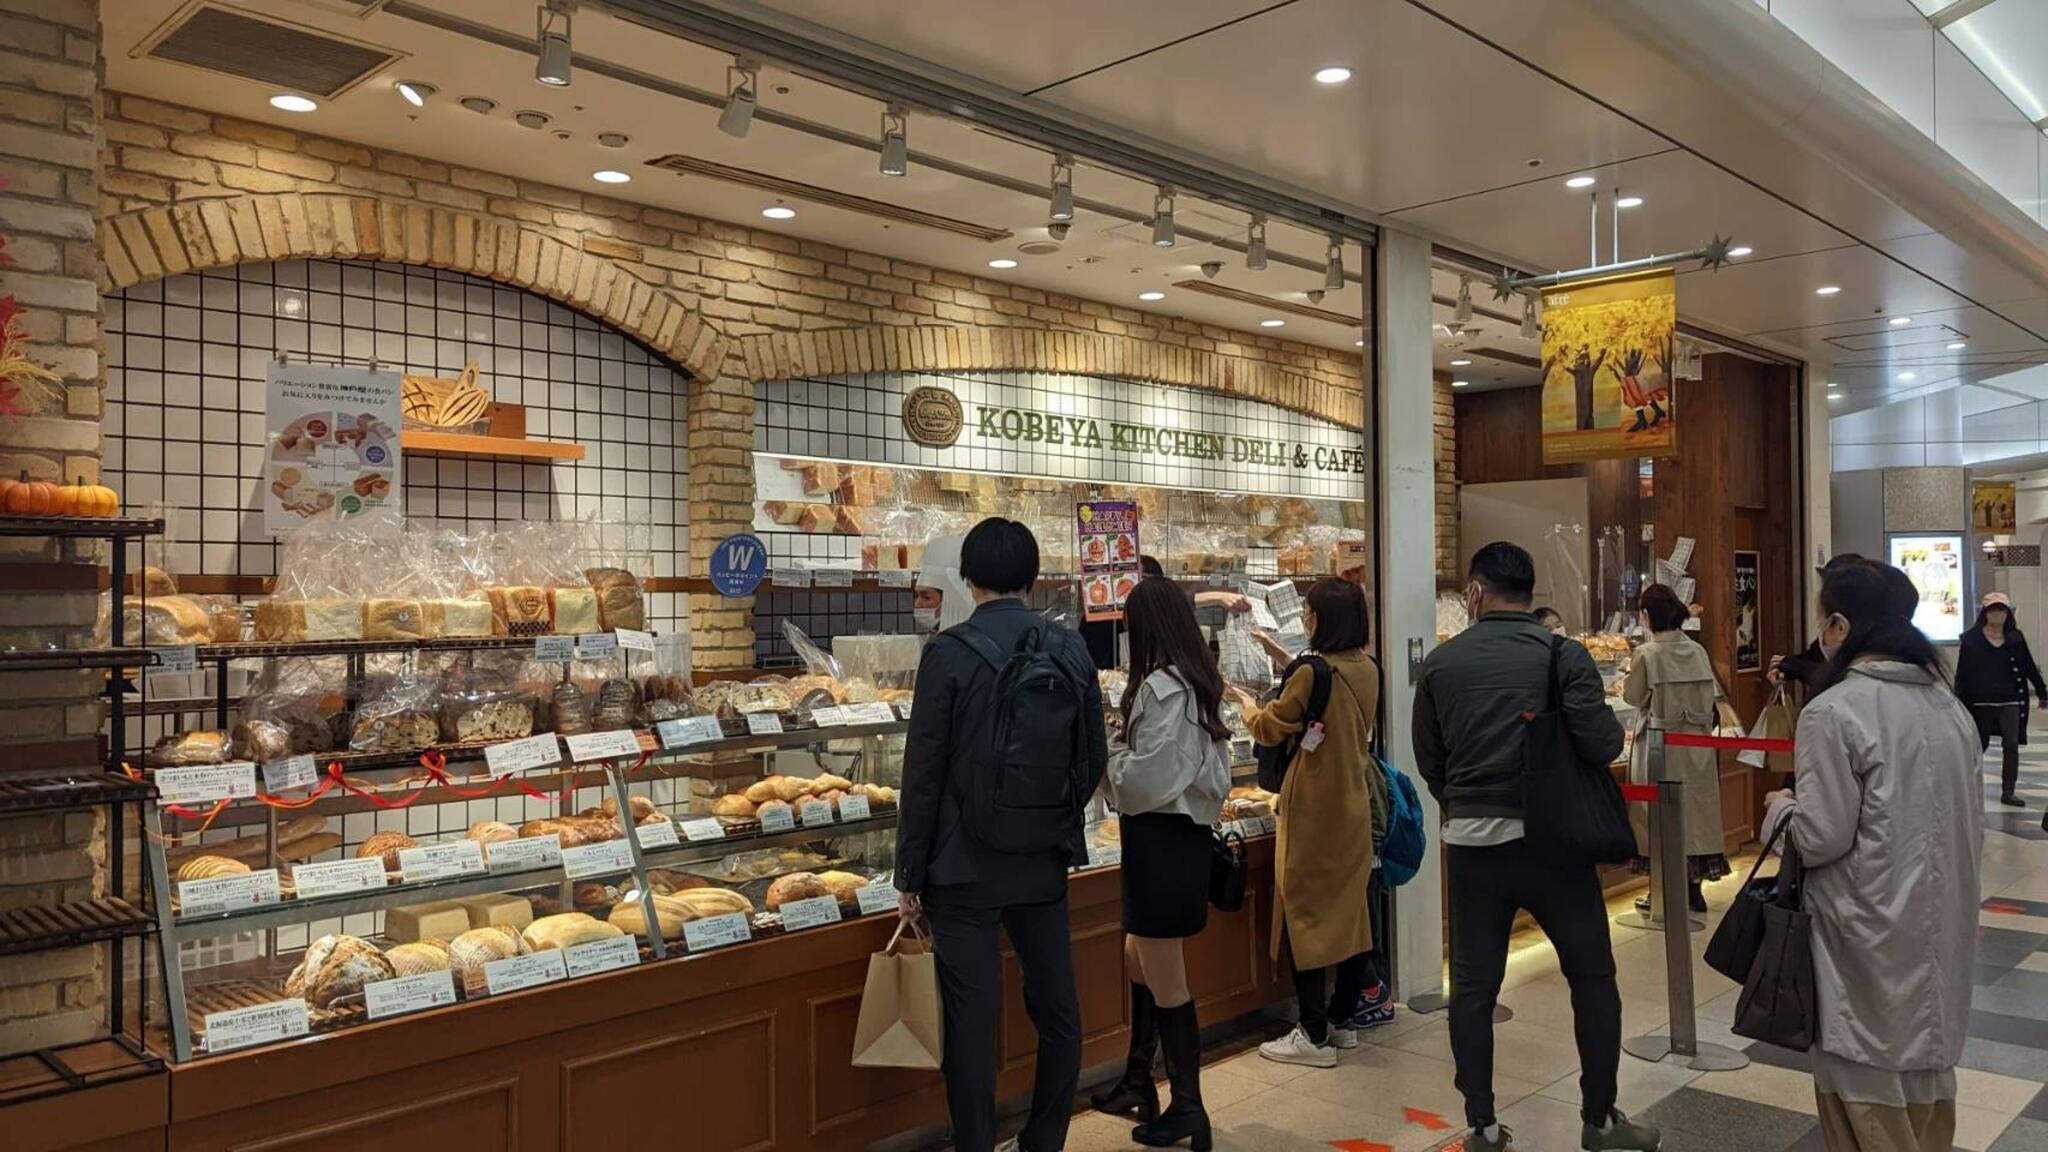 神戸屋キッチン デリ&カフェ アトレ恵比寿店の代表写真4